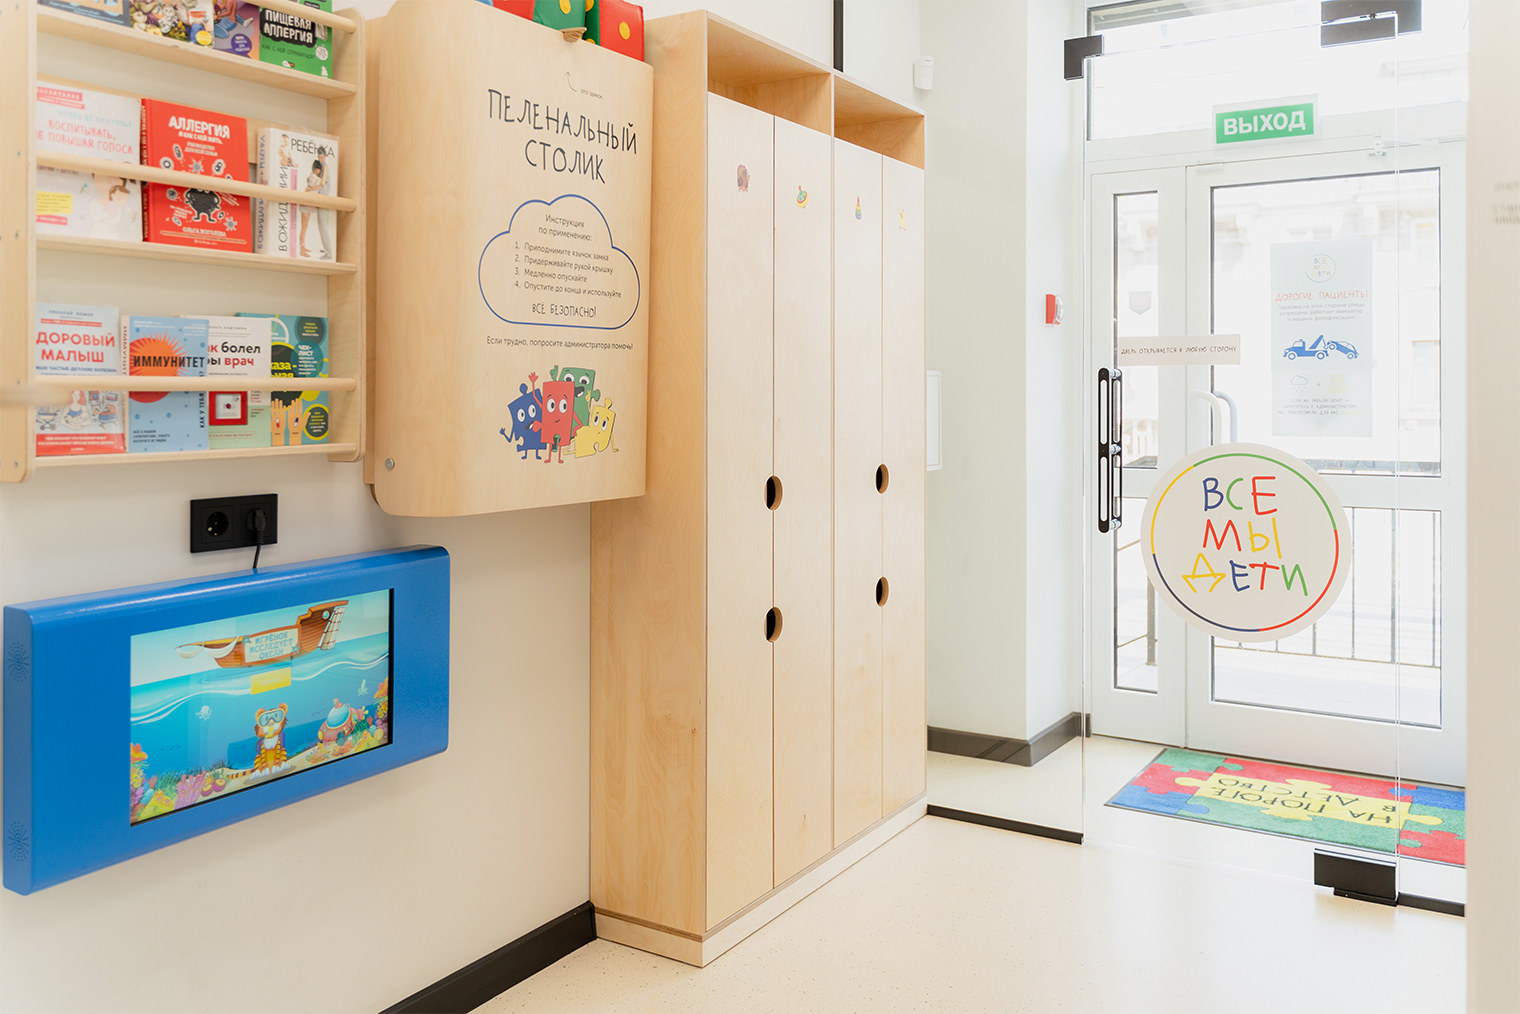 Мы хотели сделать отсылку к шкафчикам в детском саду, чтобы родители пациентов поностальгировали